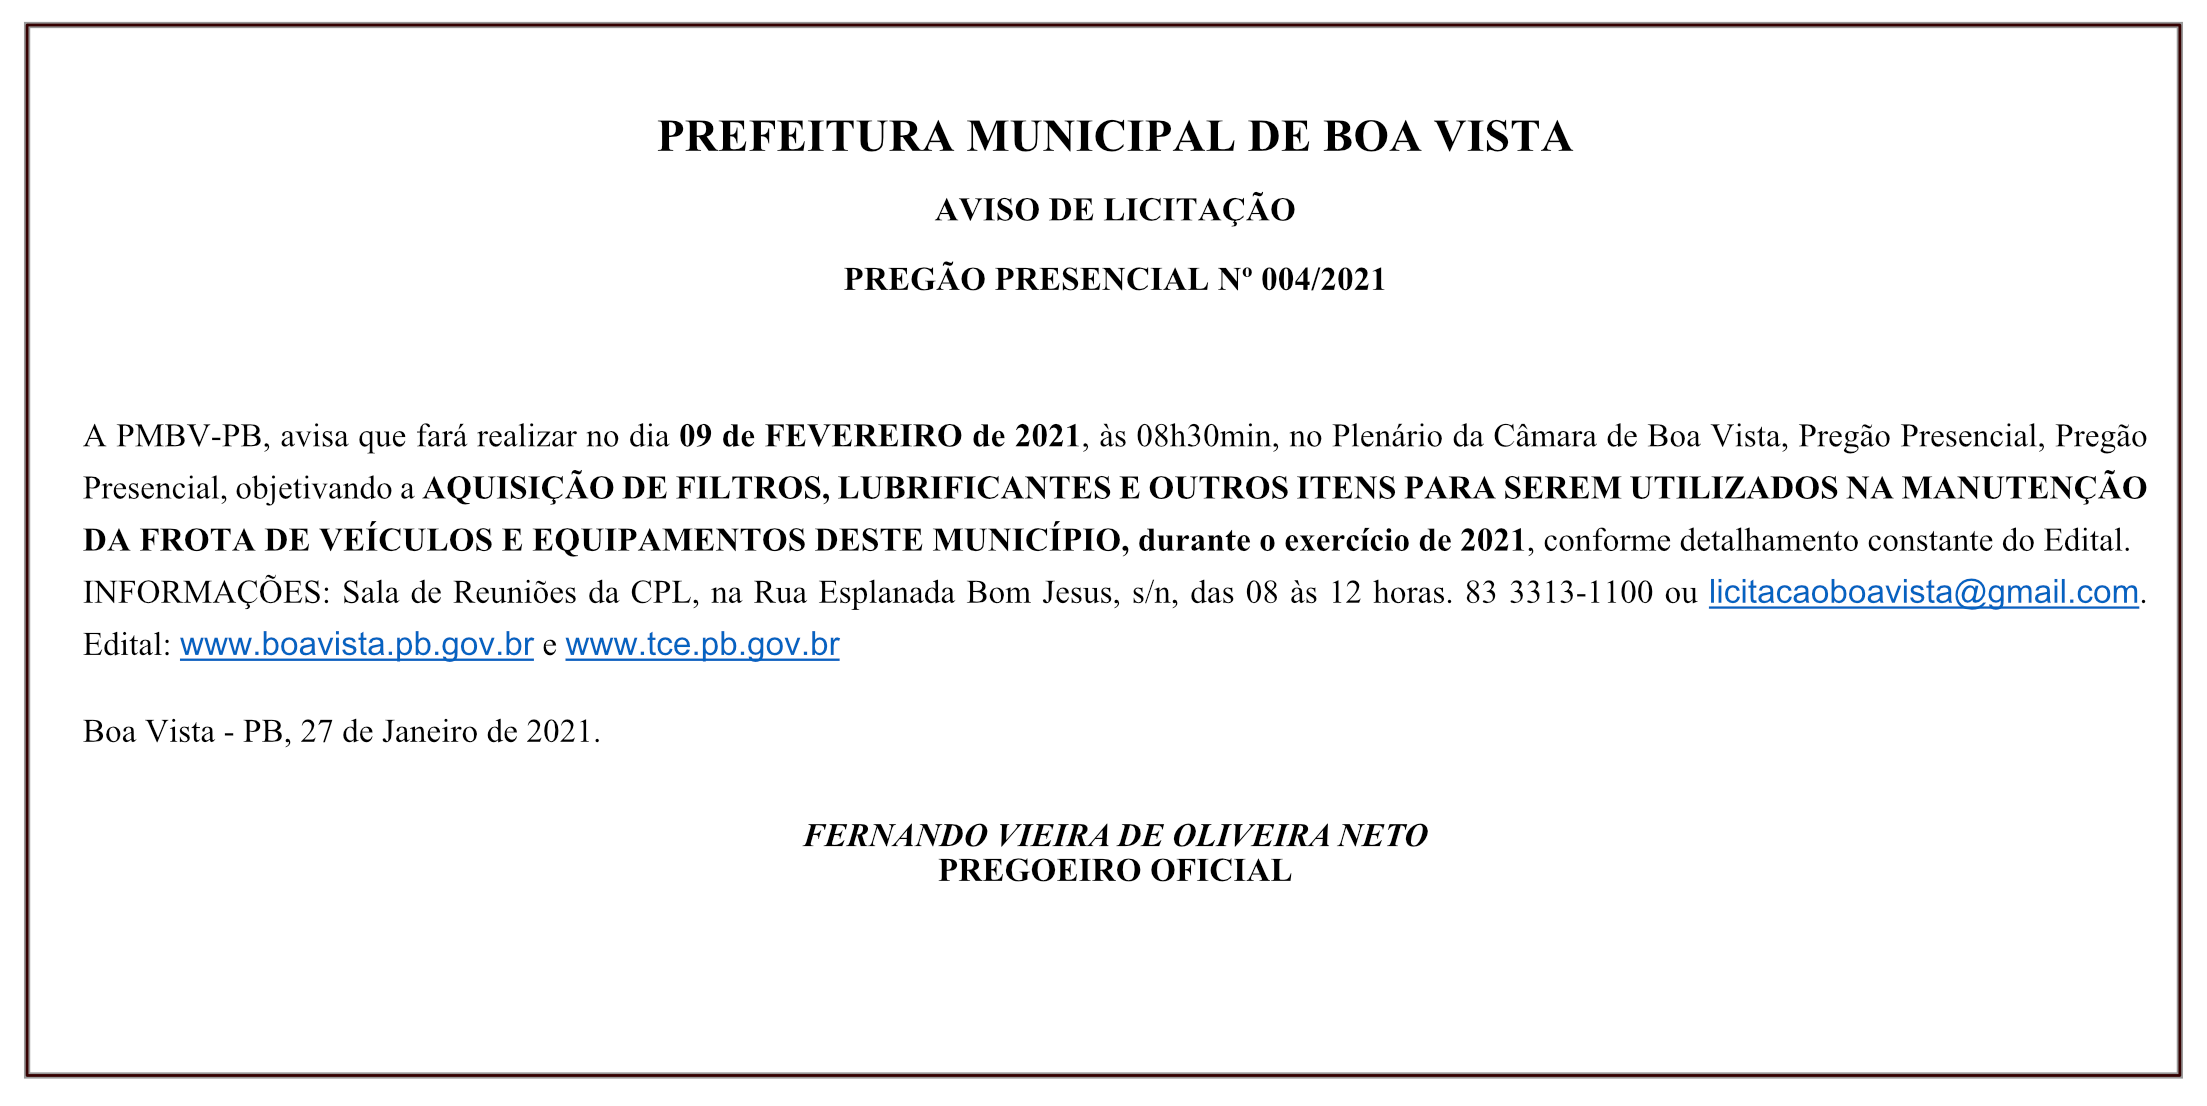 PREFEITURA MUNICIPAL DE BOA VISTA – AVISO DE LICITAÇÃO – PREGÃO PRESENCIAL Nº 004/2021